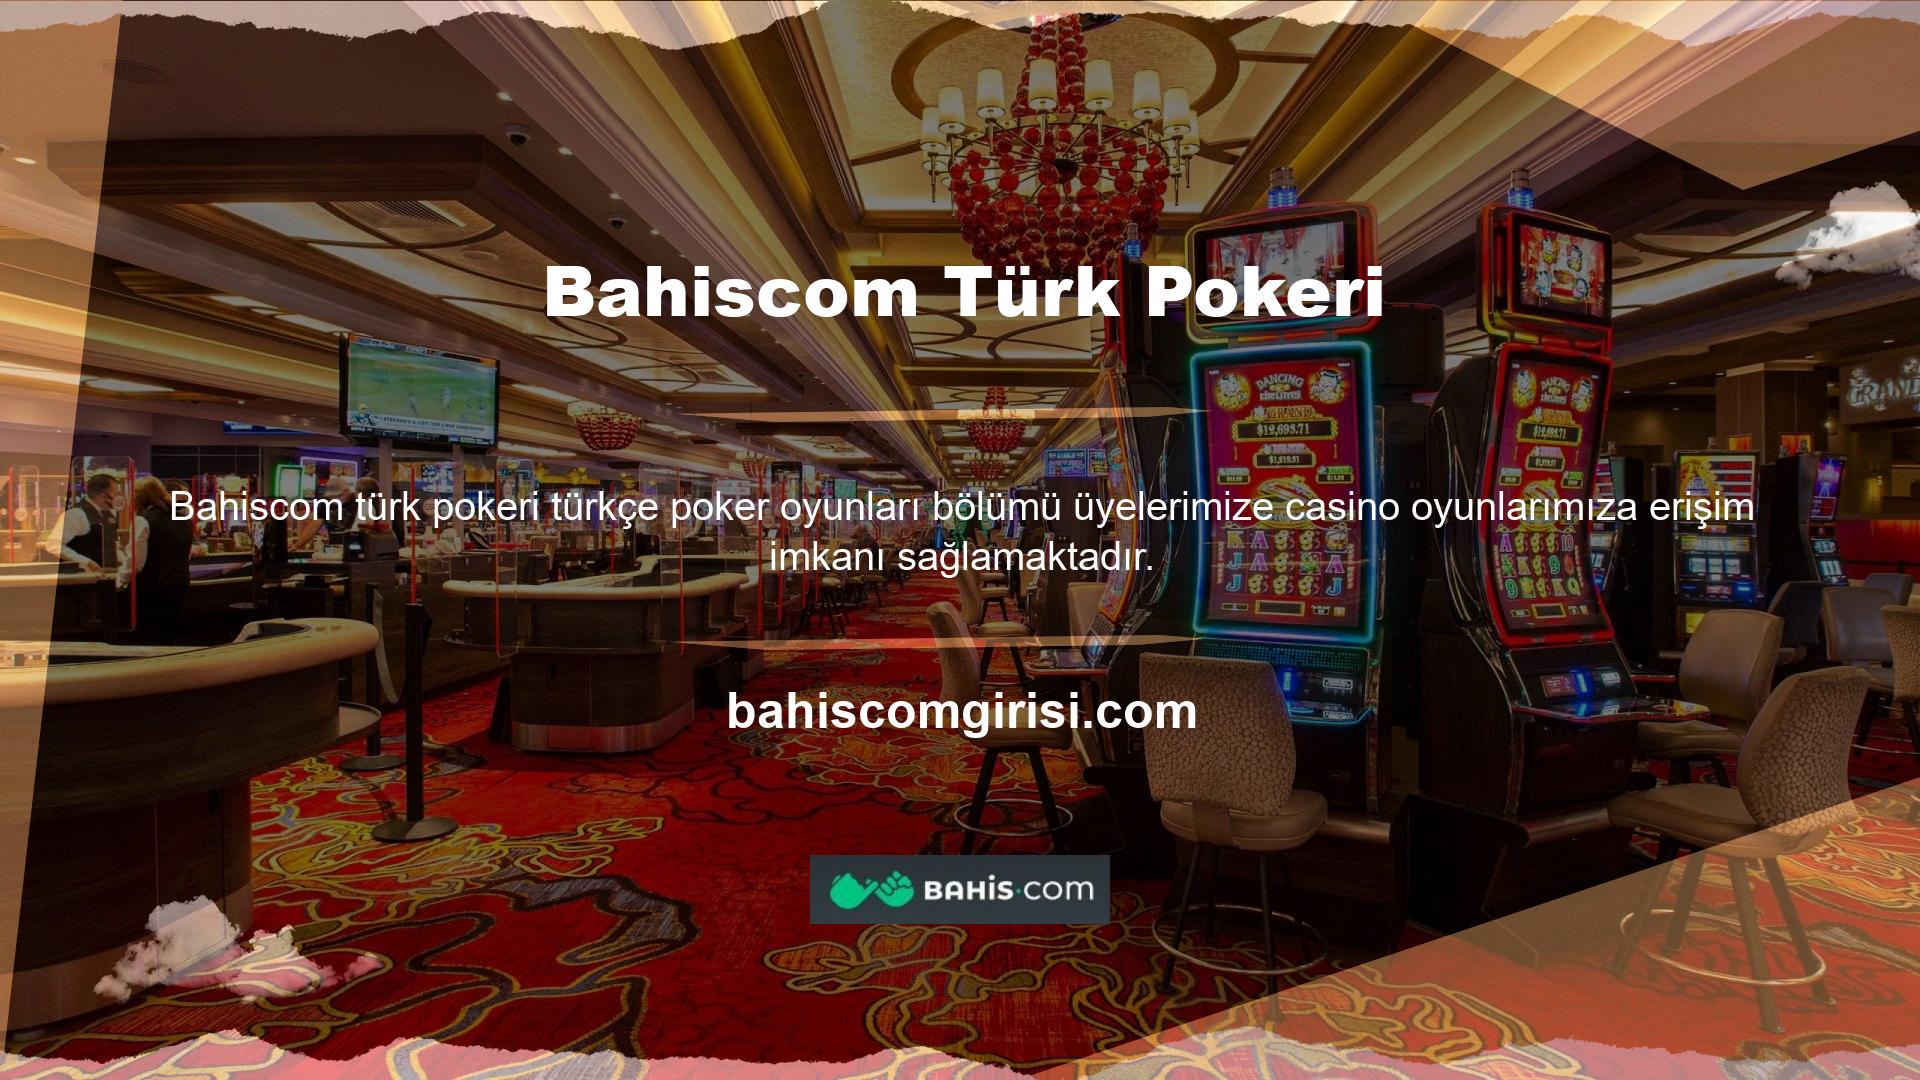 Tüm üyeler Bahiscom Turkish Poker Turkish poker oynayarak önemli miktarda para kazanma şansına sahiptir